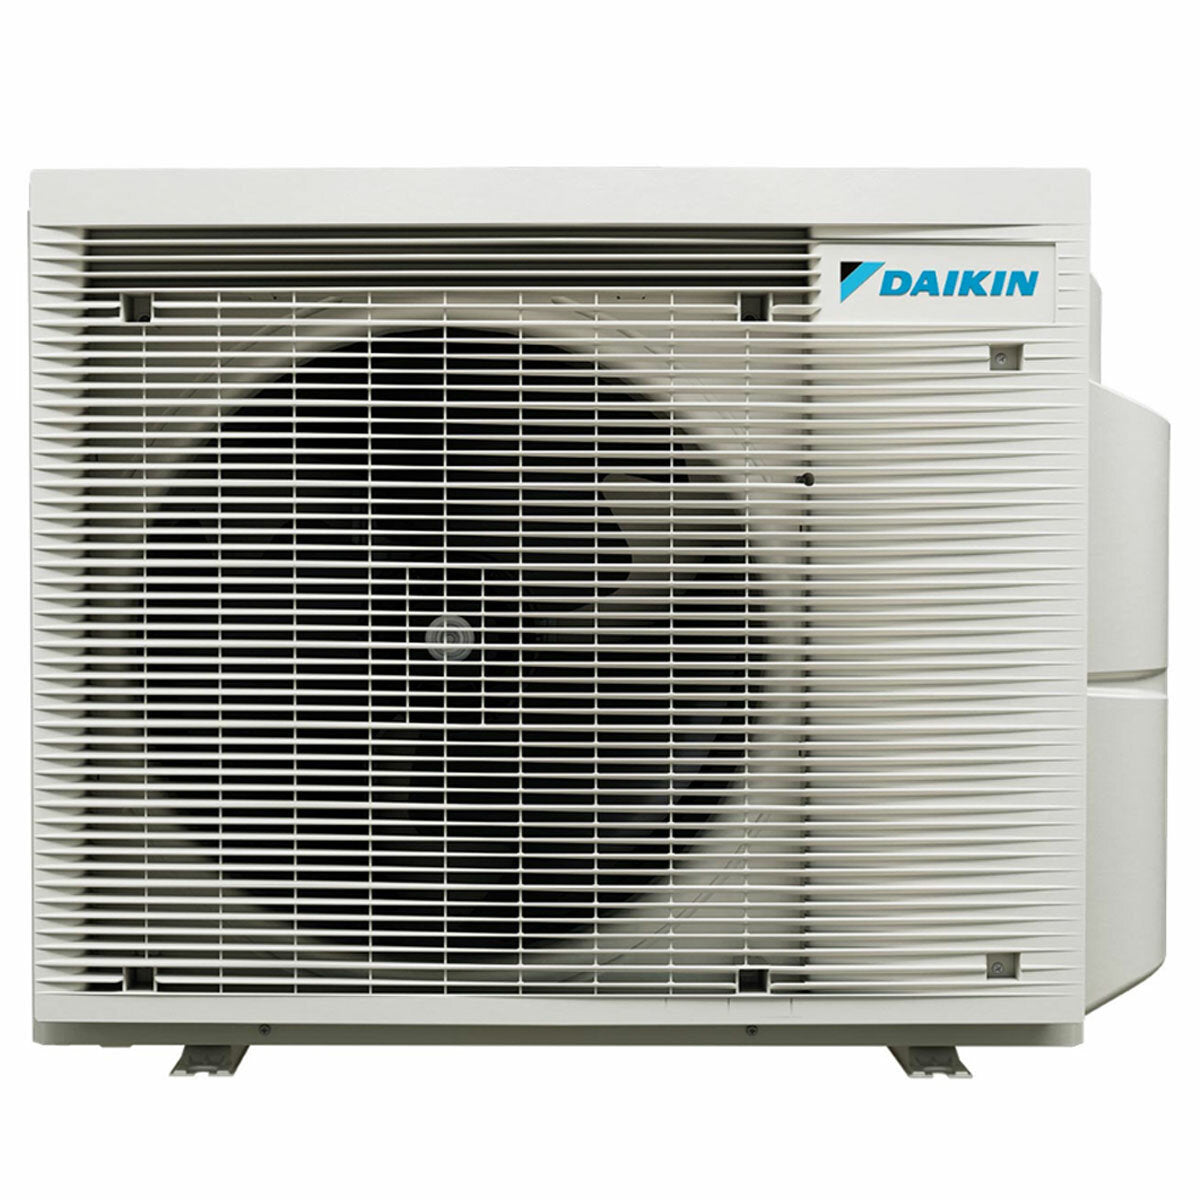 Daikin Emura 3 air conditioner penta split 7000+7000+7000+9000+9000 BTU inverter A+ wifi outdoor unit 7.8 kW White